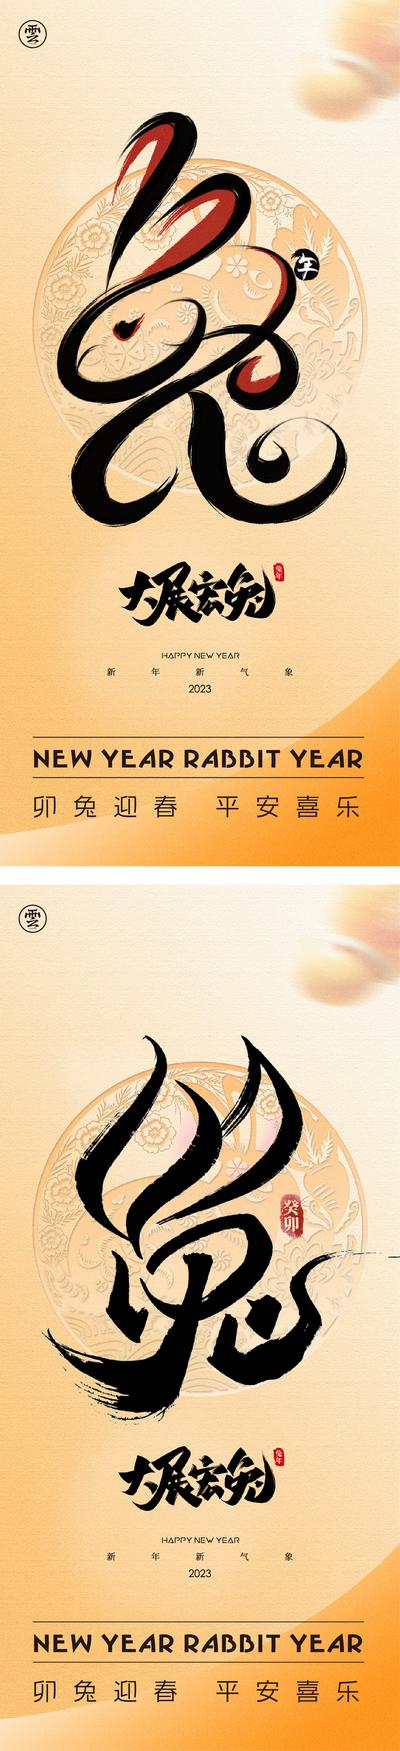 南门网 海报 中国传统节日 元旦 春节 除夕 2023 兔年 书法 笔触 剪纸